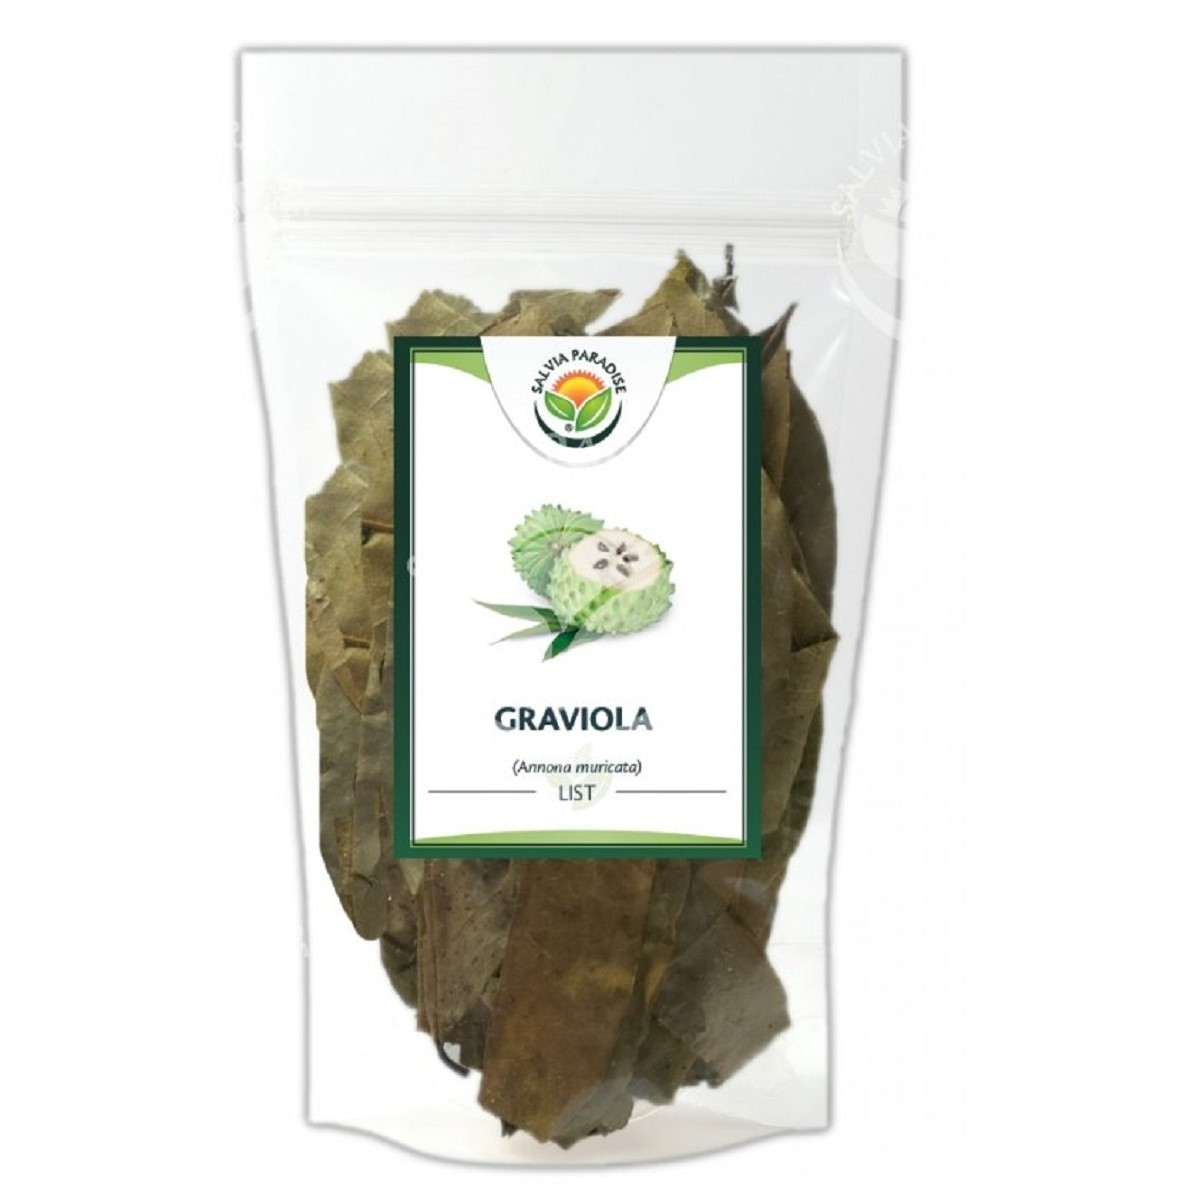 Graviola - Annona muricata - list - 40 g